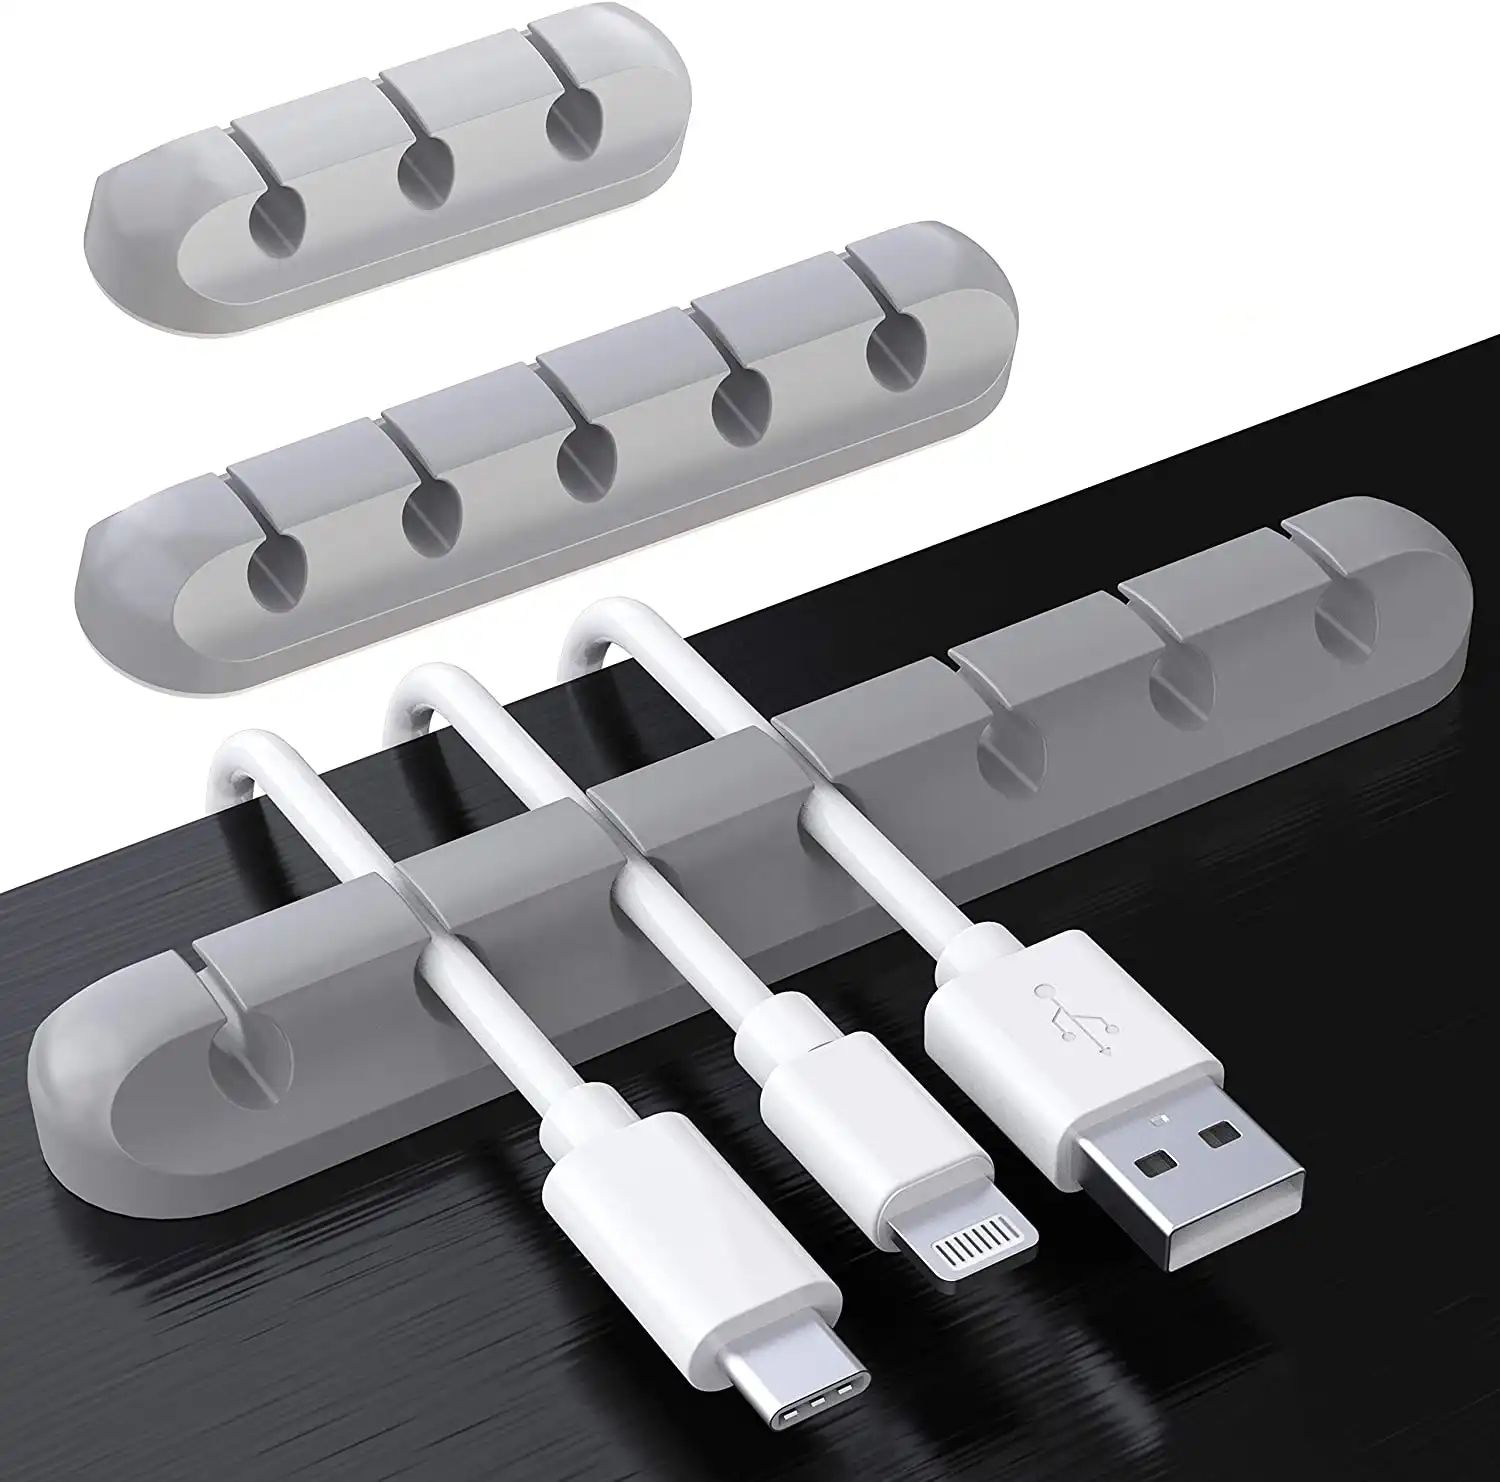 5 ranuras 3 ranuras 7 ranuras USB Cable fijador de Clips de Cable Clips Organizadores de silicona adhesiva